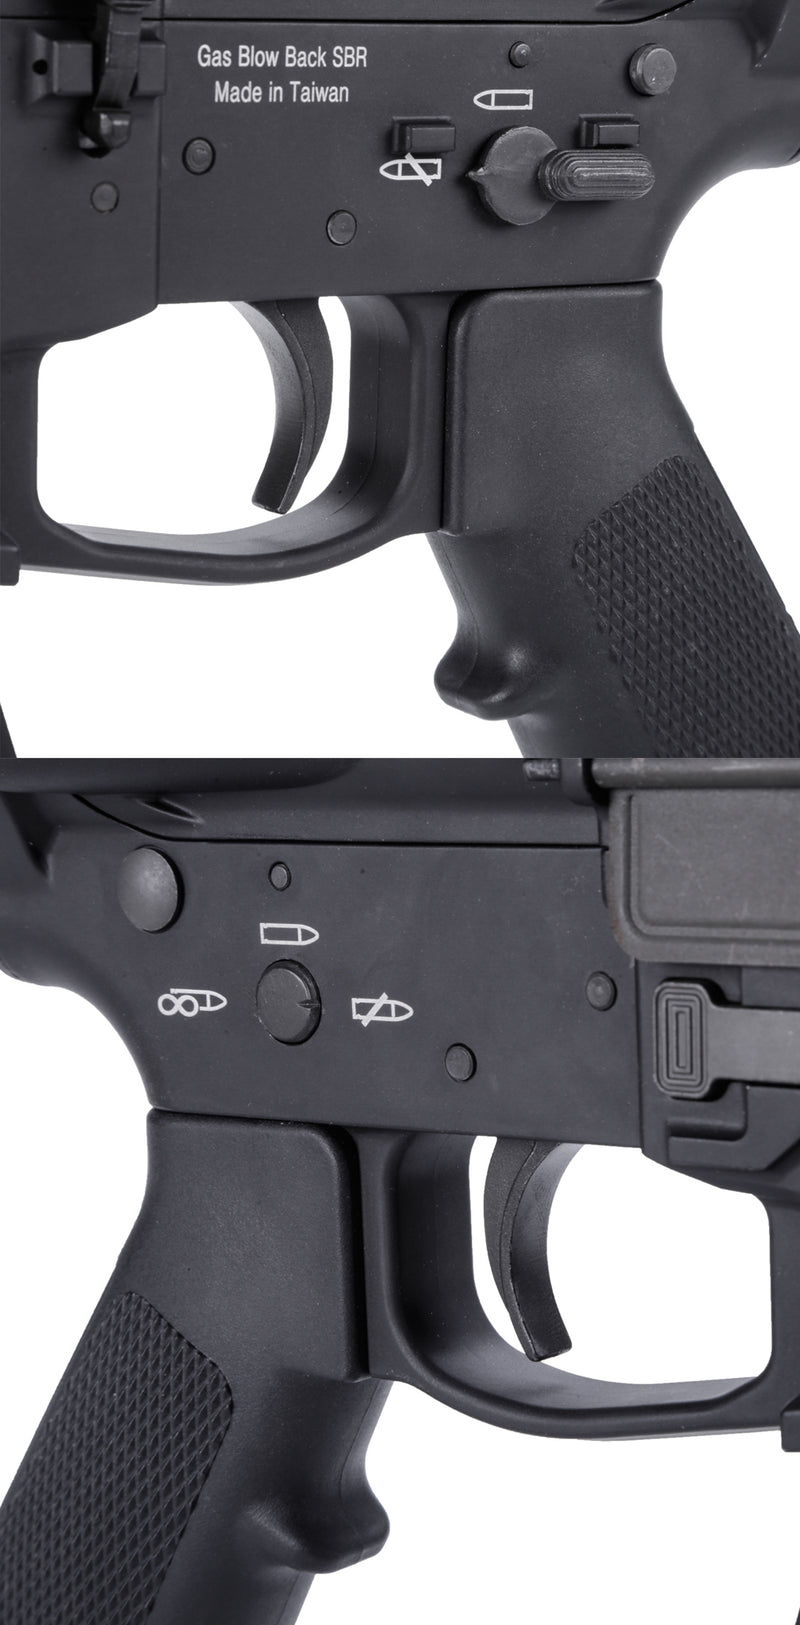 King Arms TWS 9mm SBR ガスブローバックライフル (ブラック)